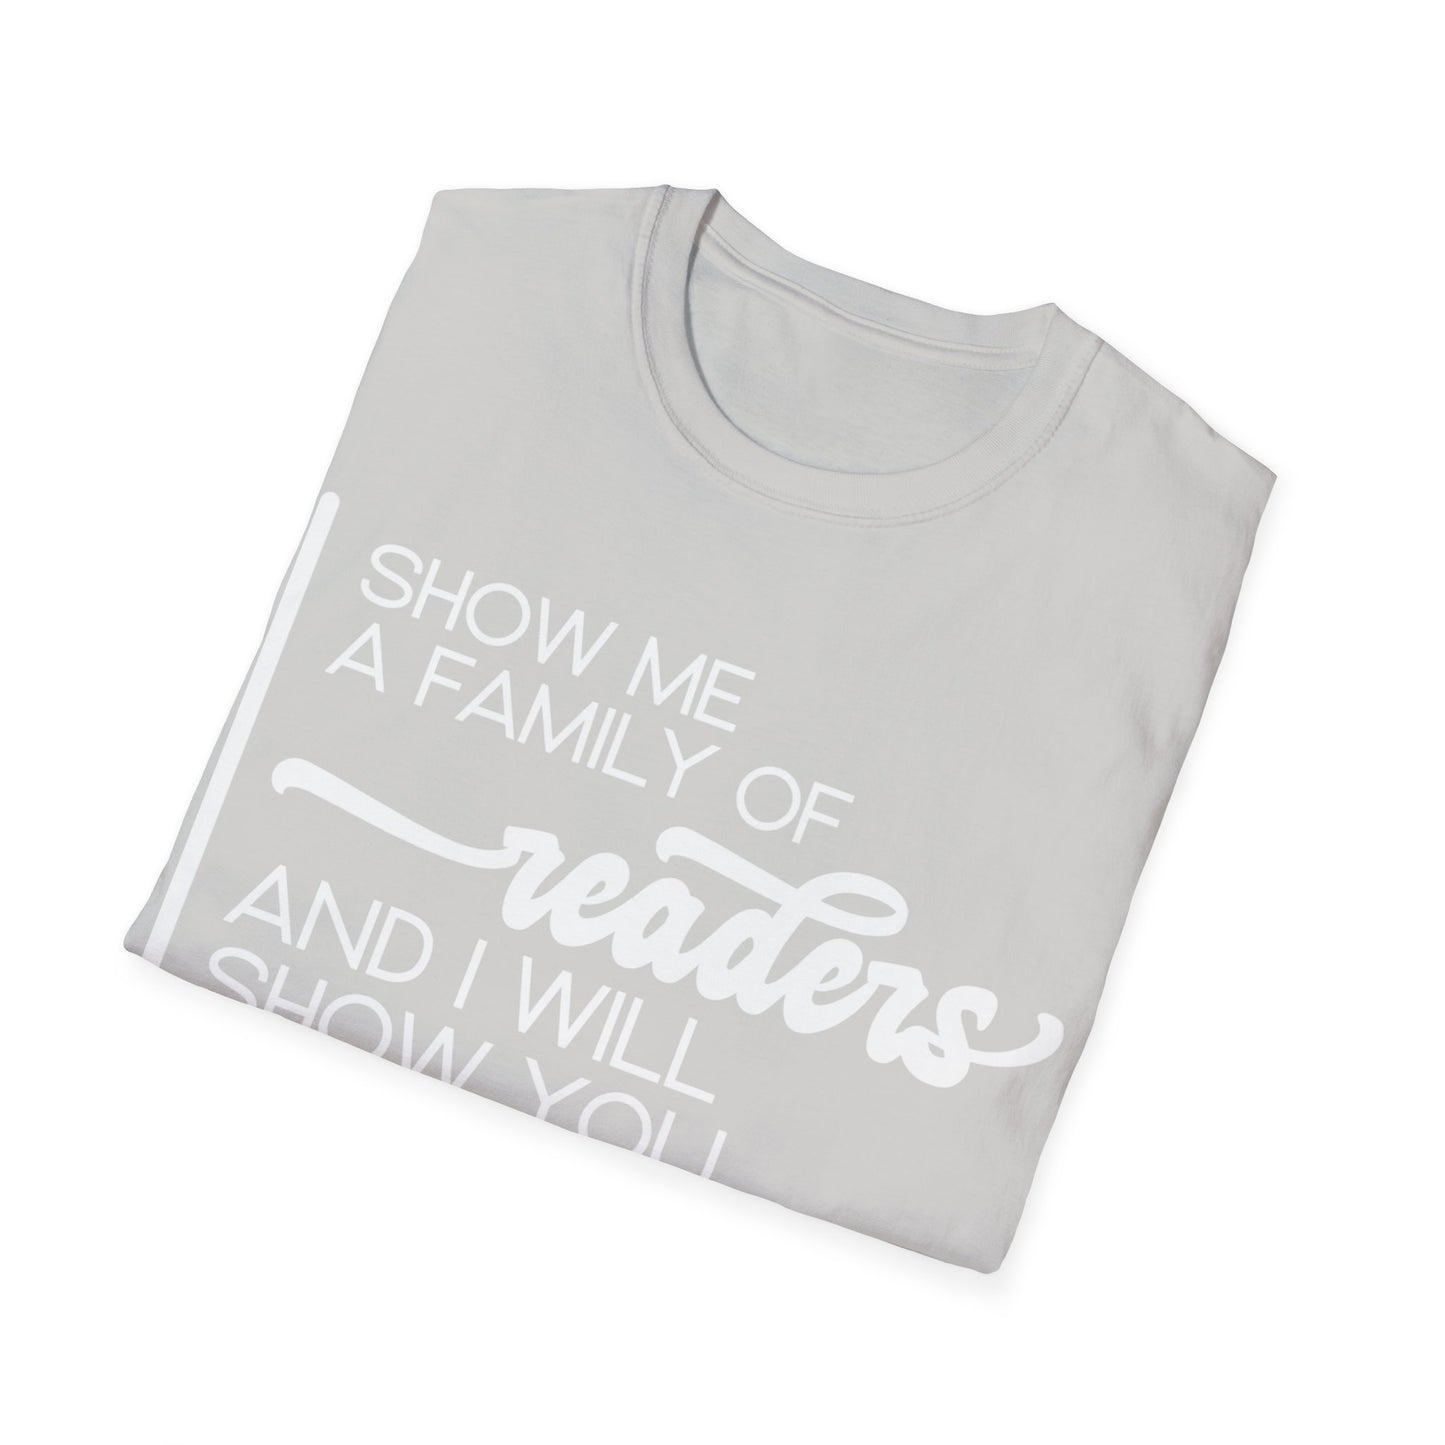 NB Q3 White - Unisex Softstyle T-Shirt